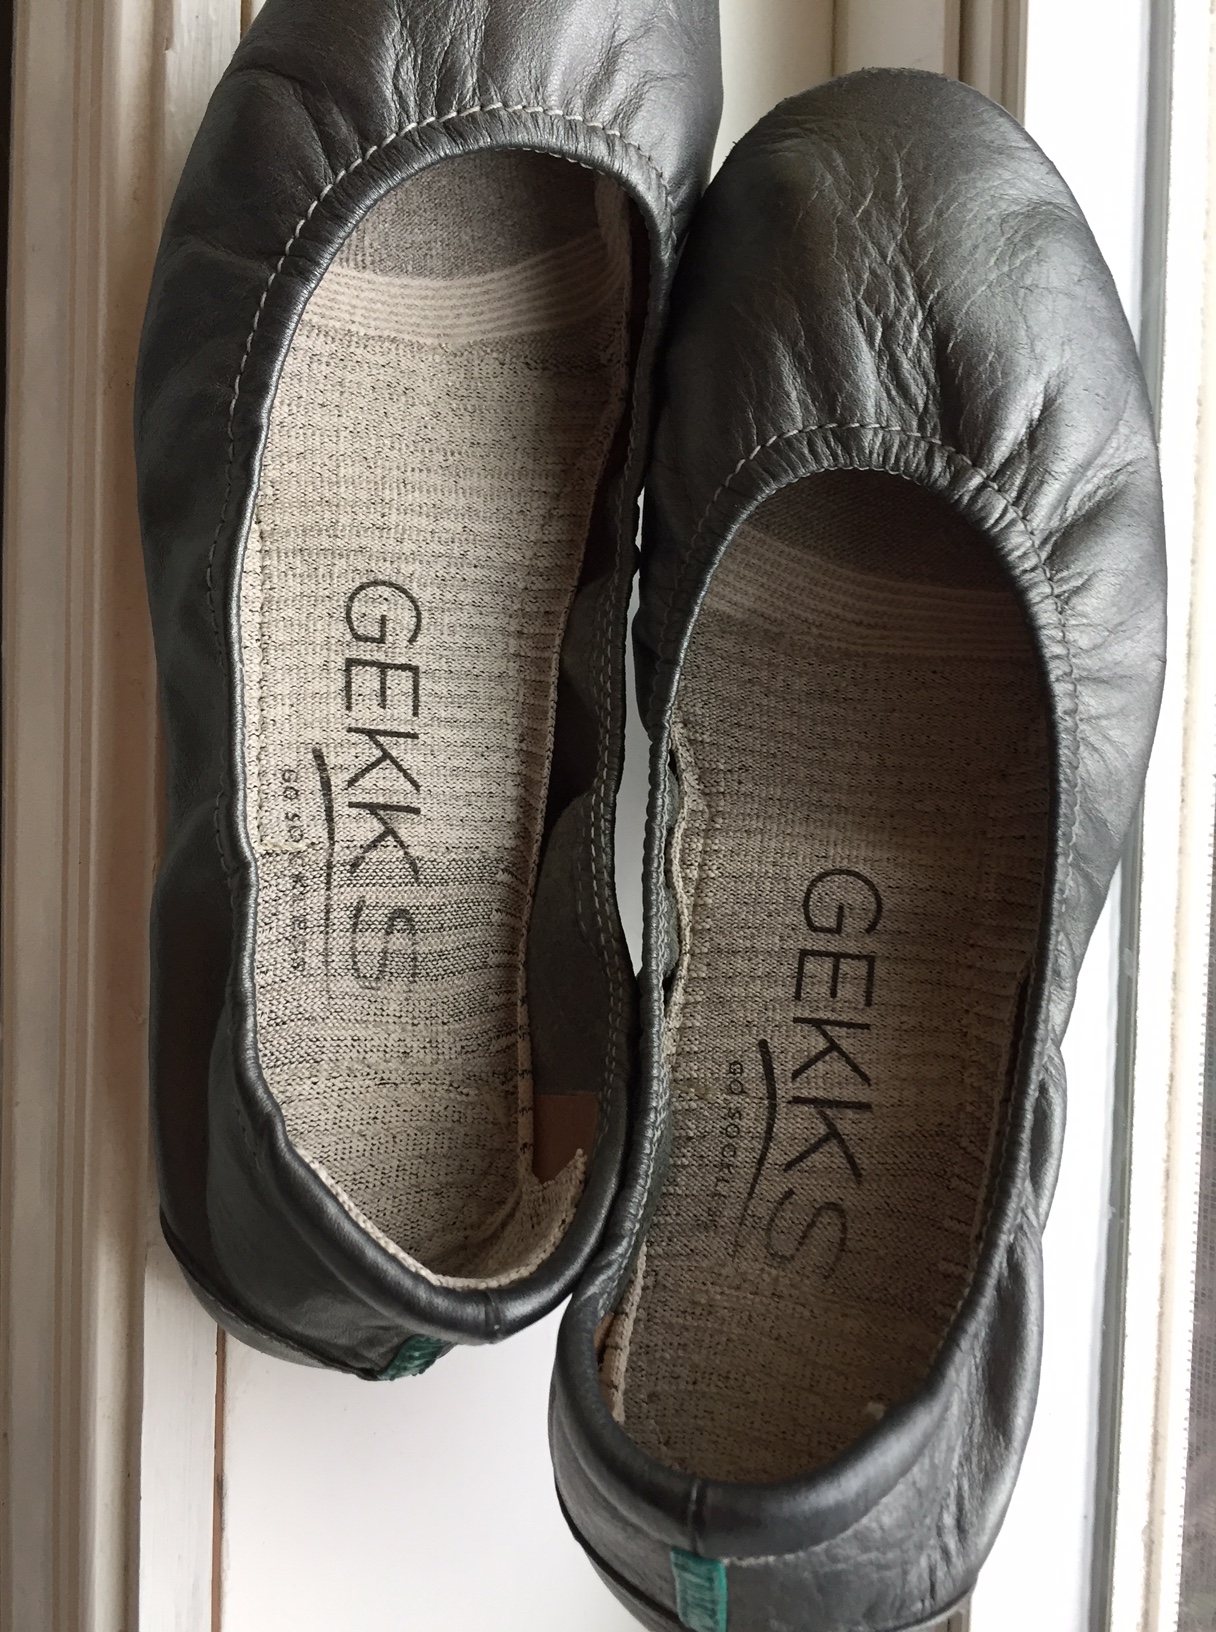 gekks shoes